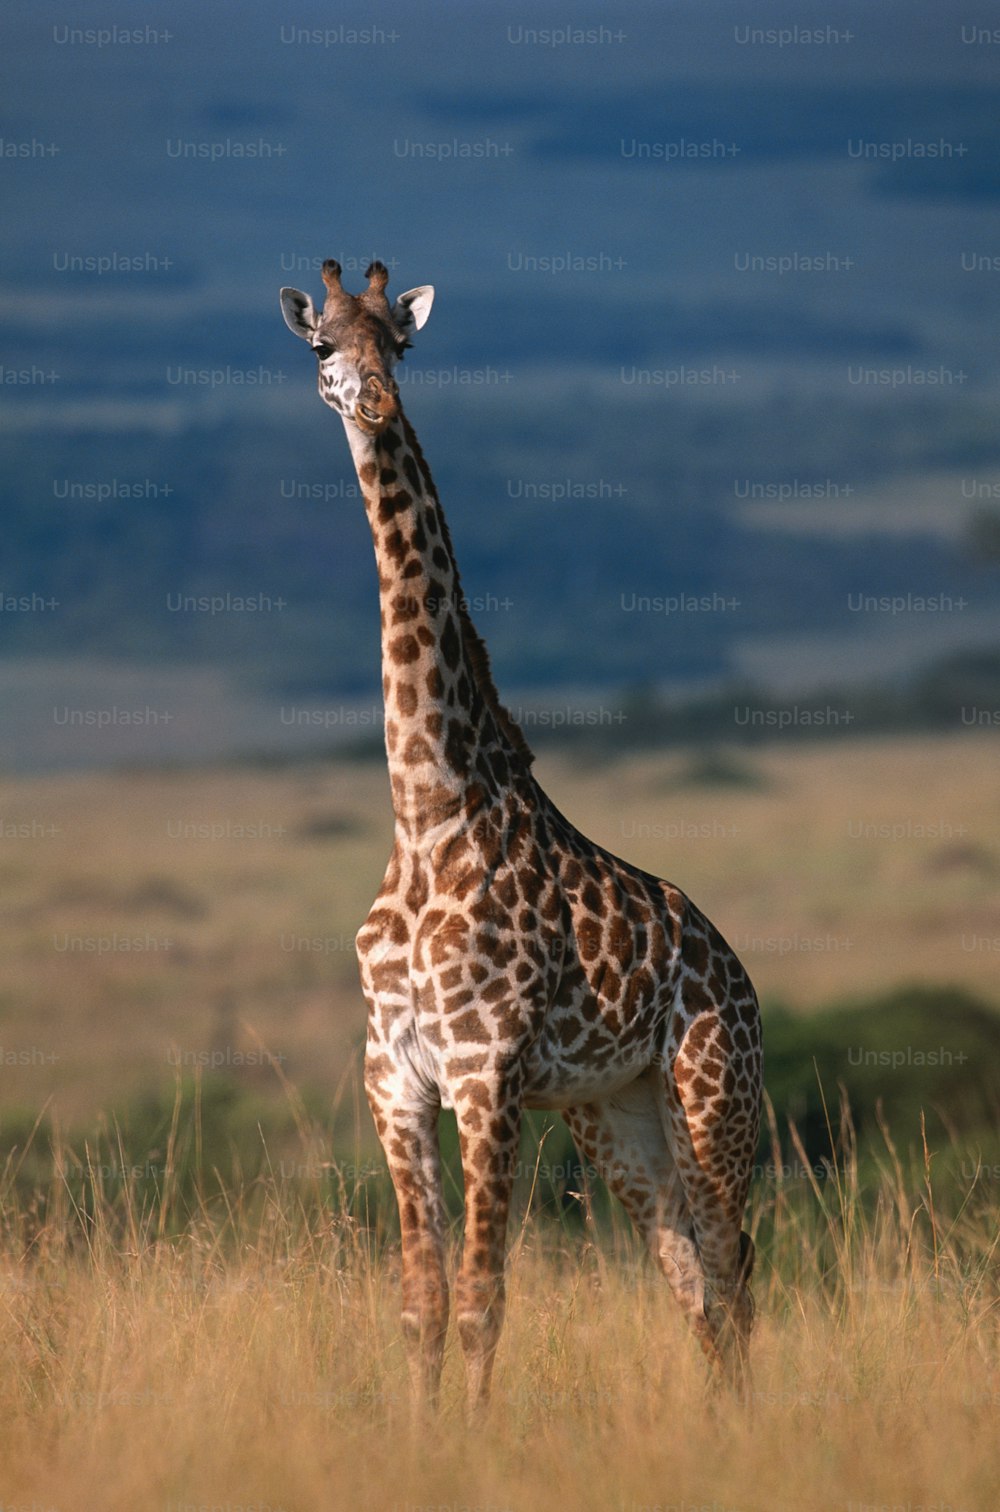 Una jirafa parada en medio de un campo